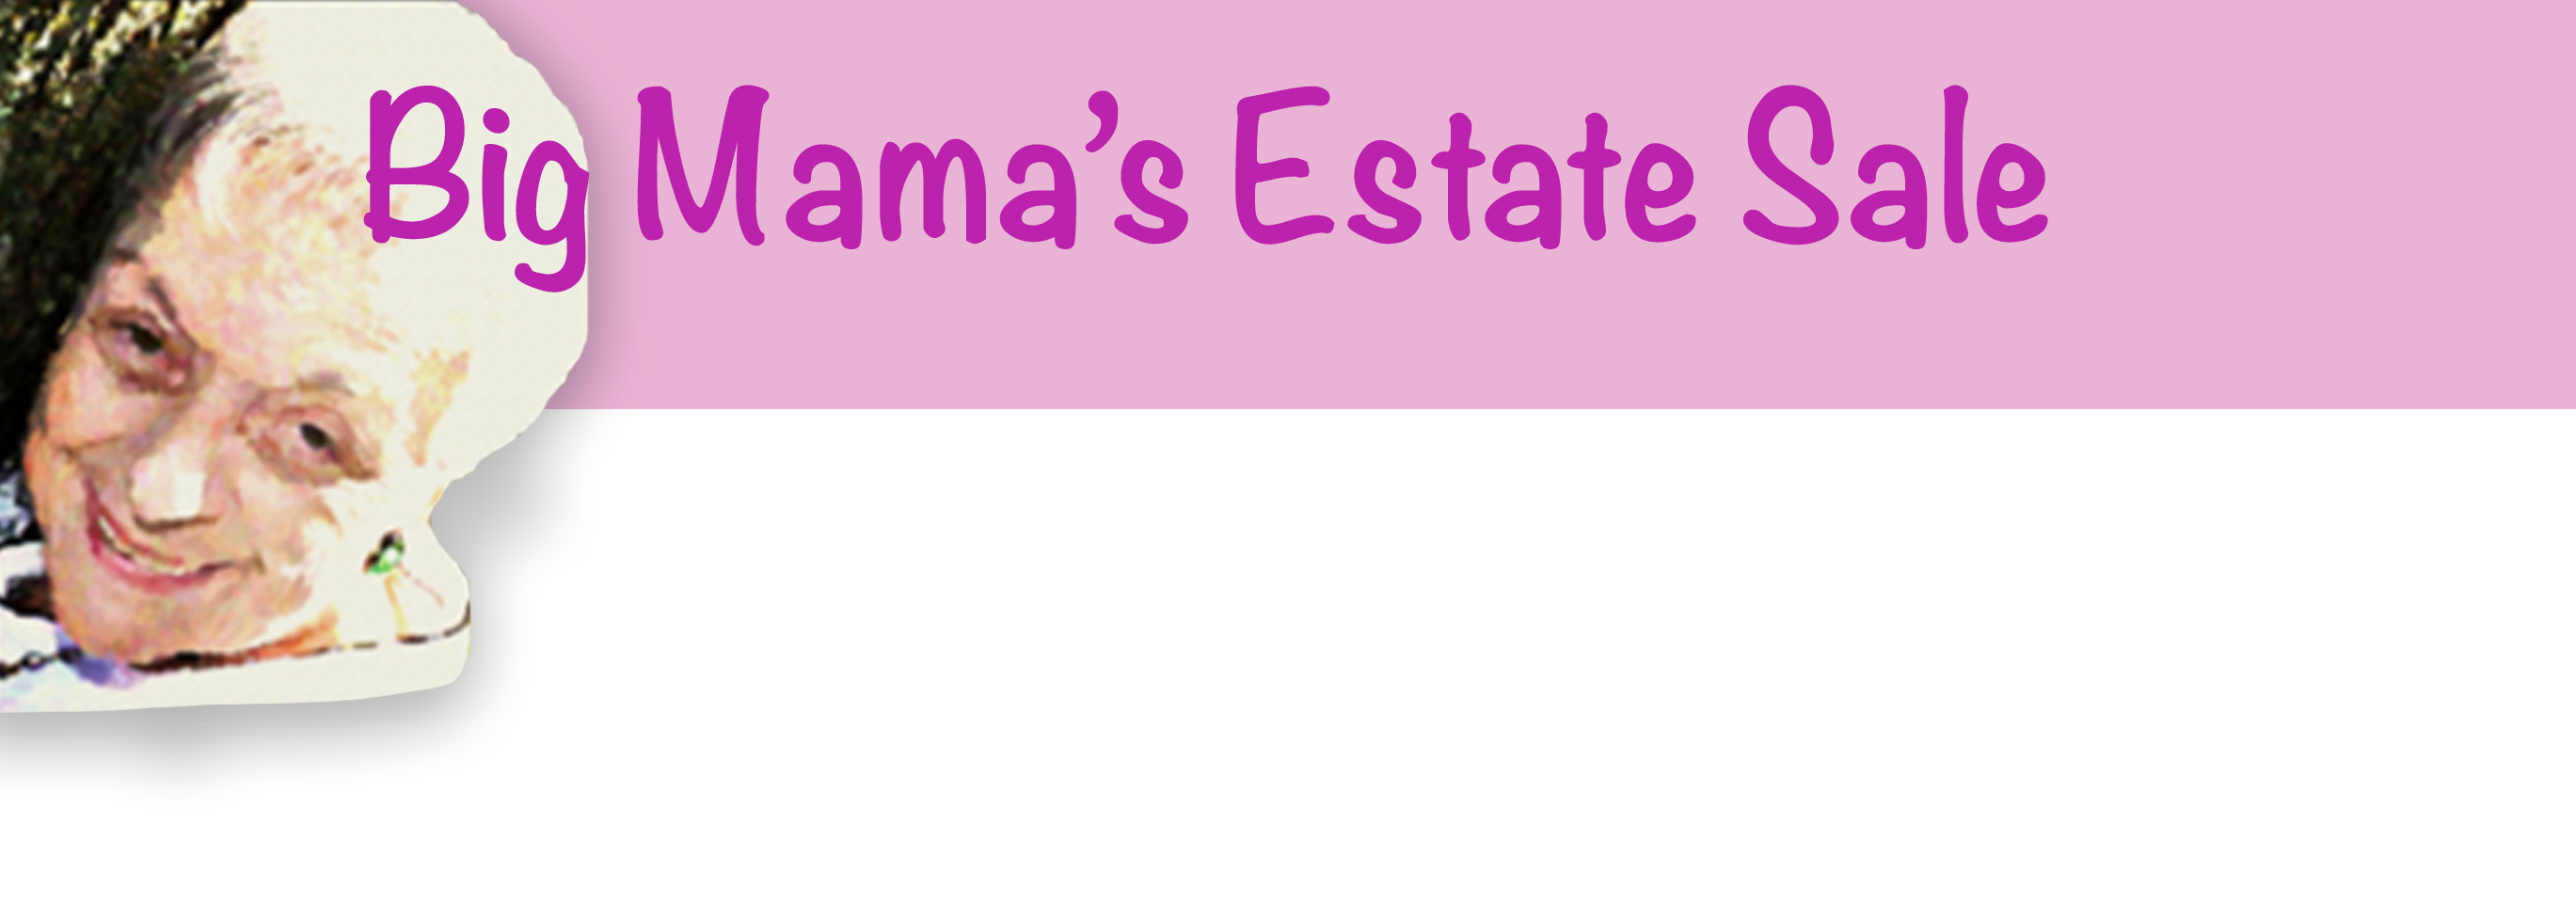 Big Mama's Estate